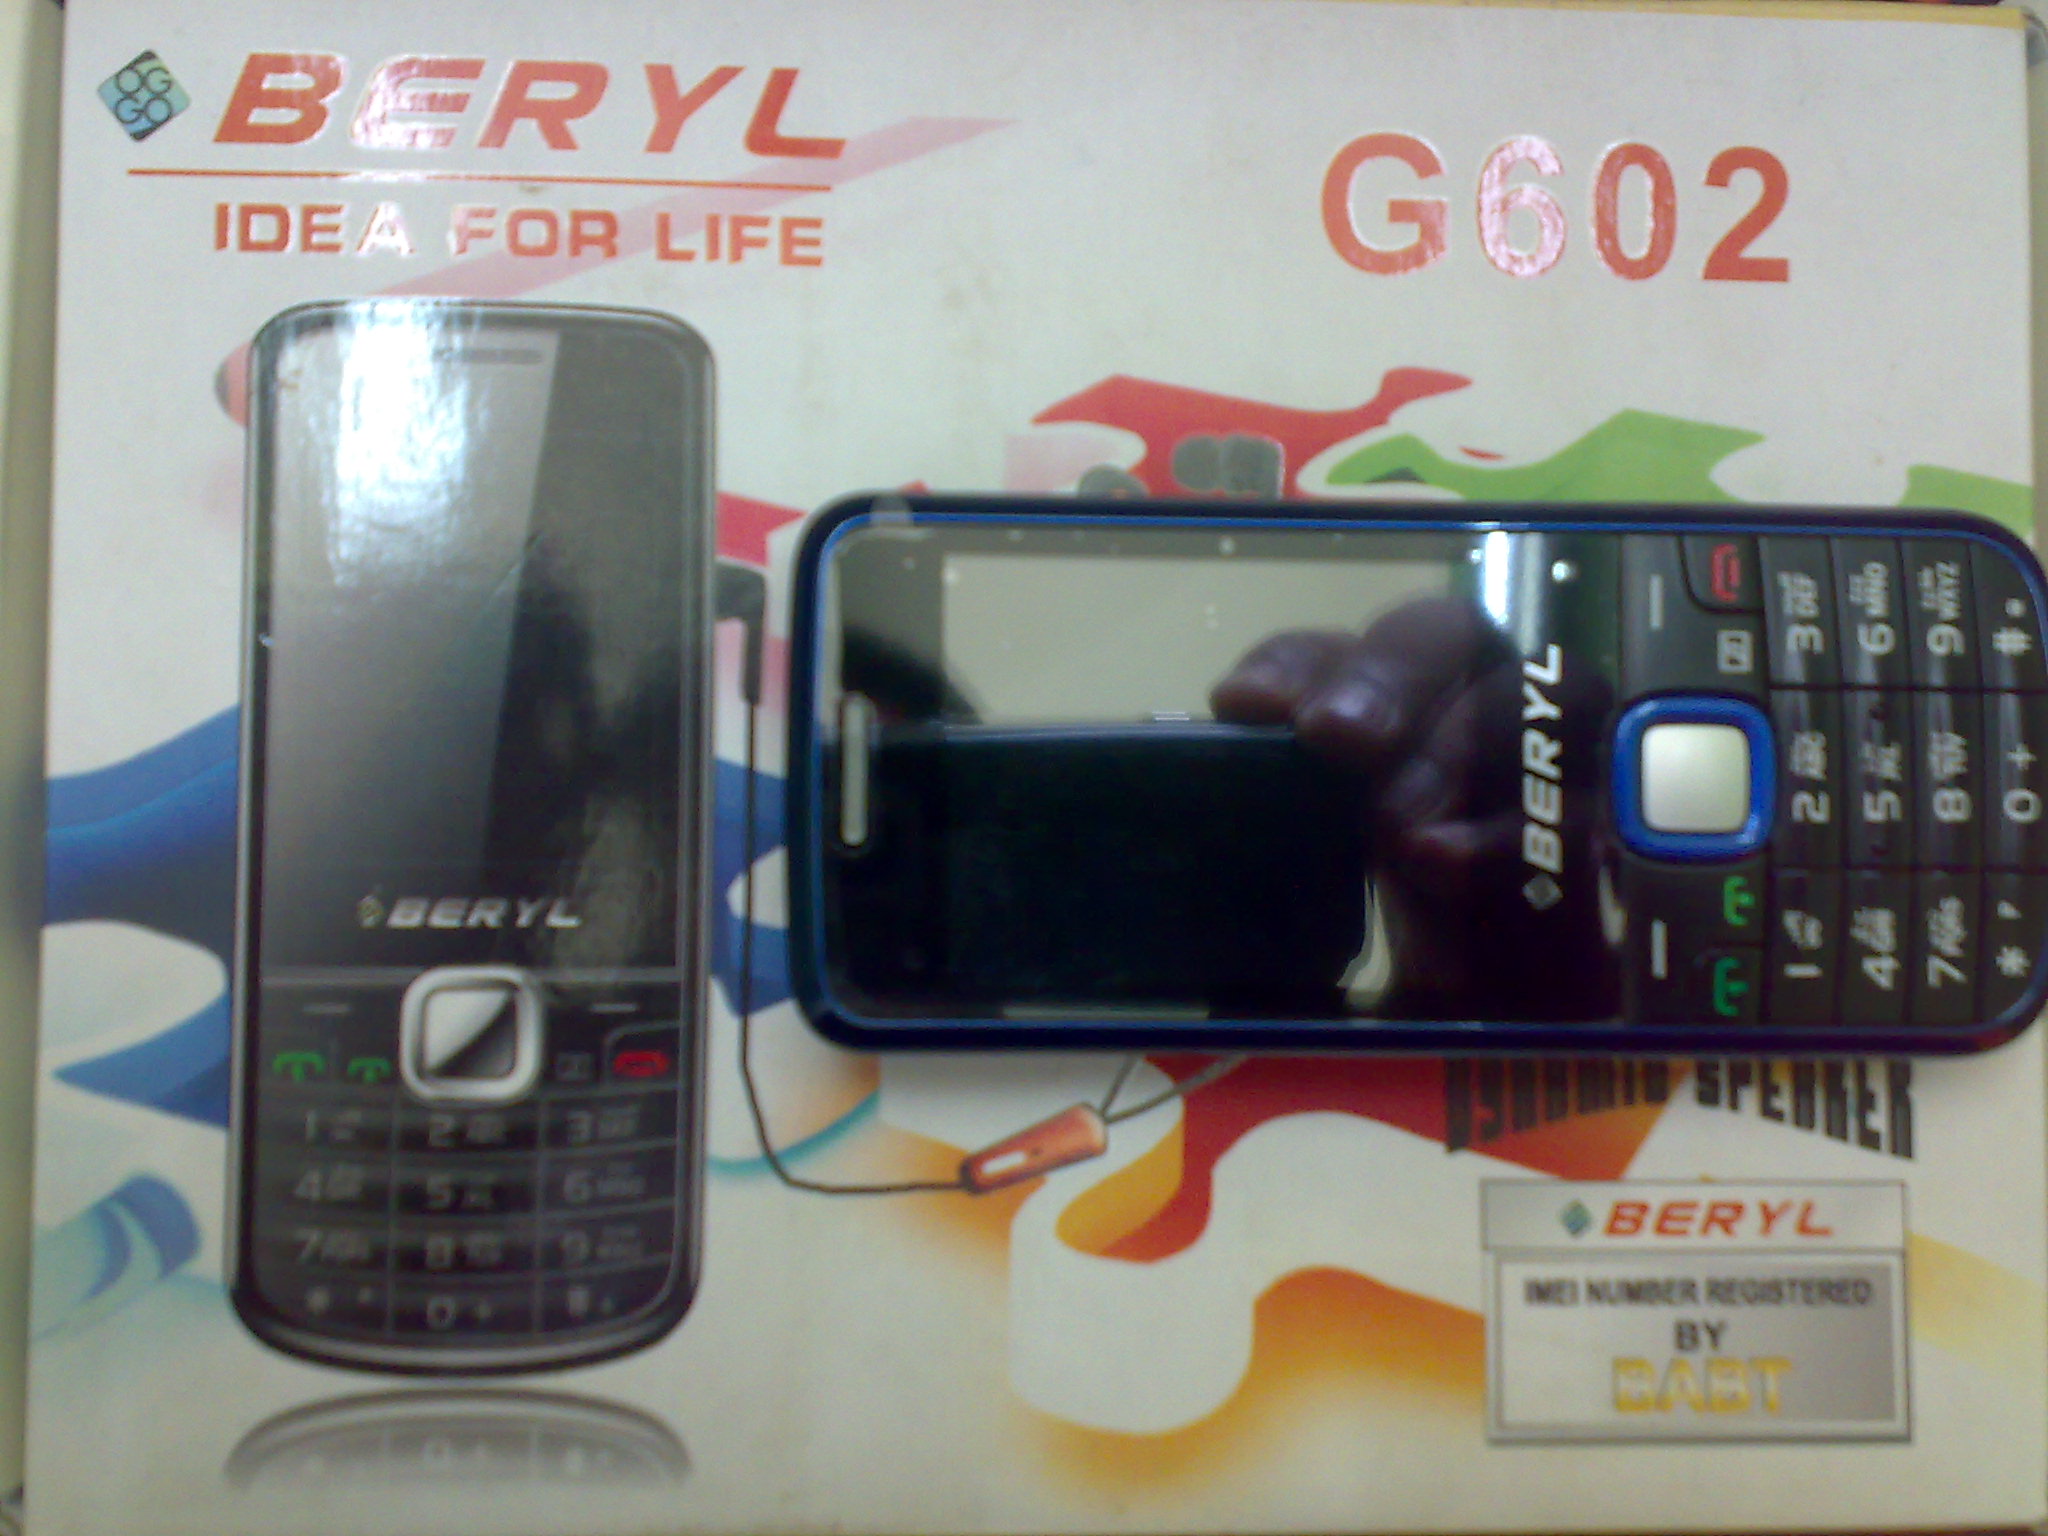  BERYL  G602  8 